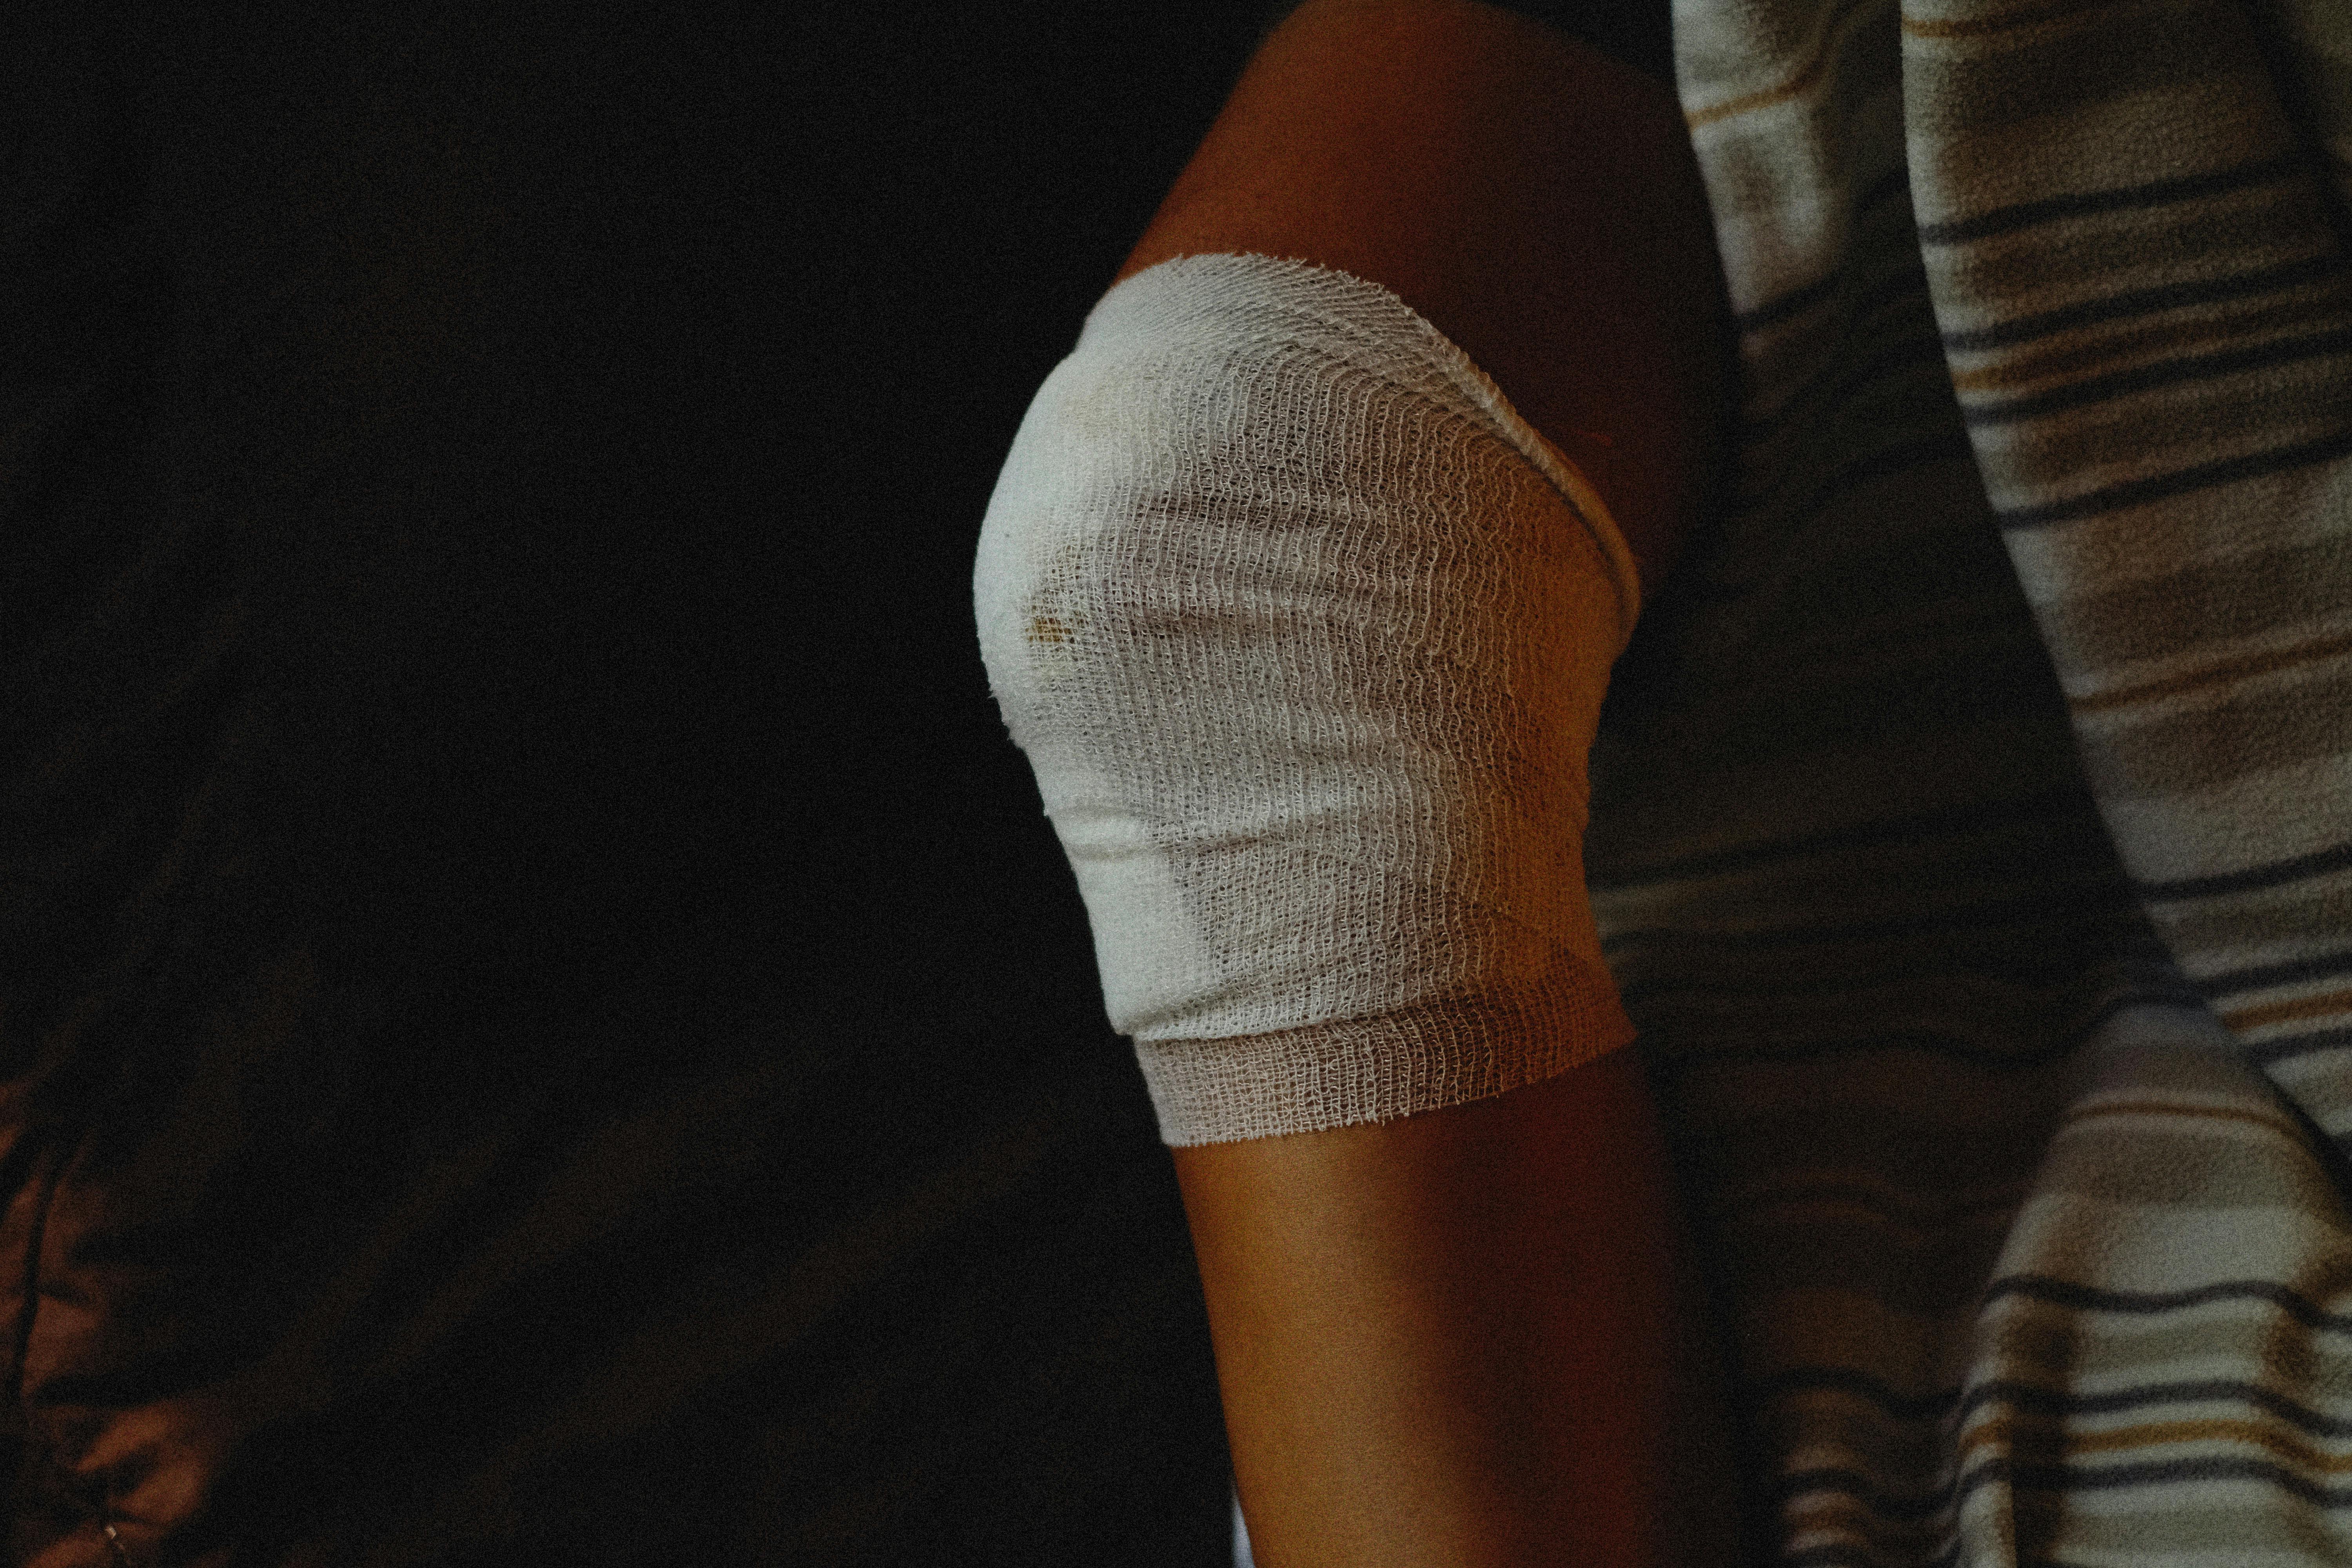 Injured Bandage, Right